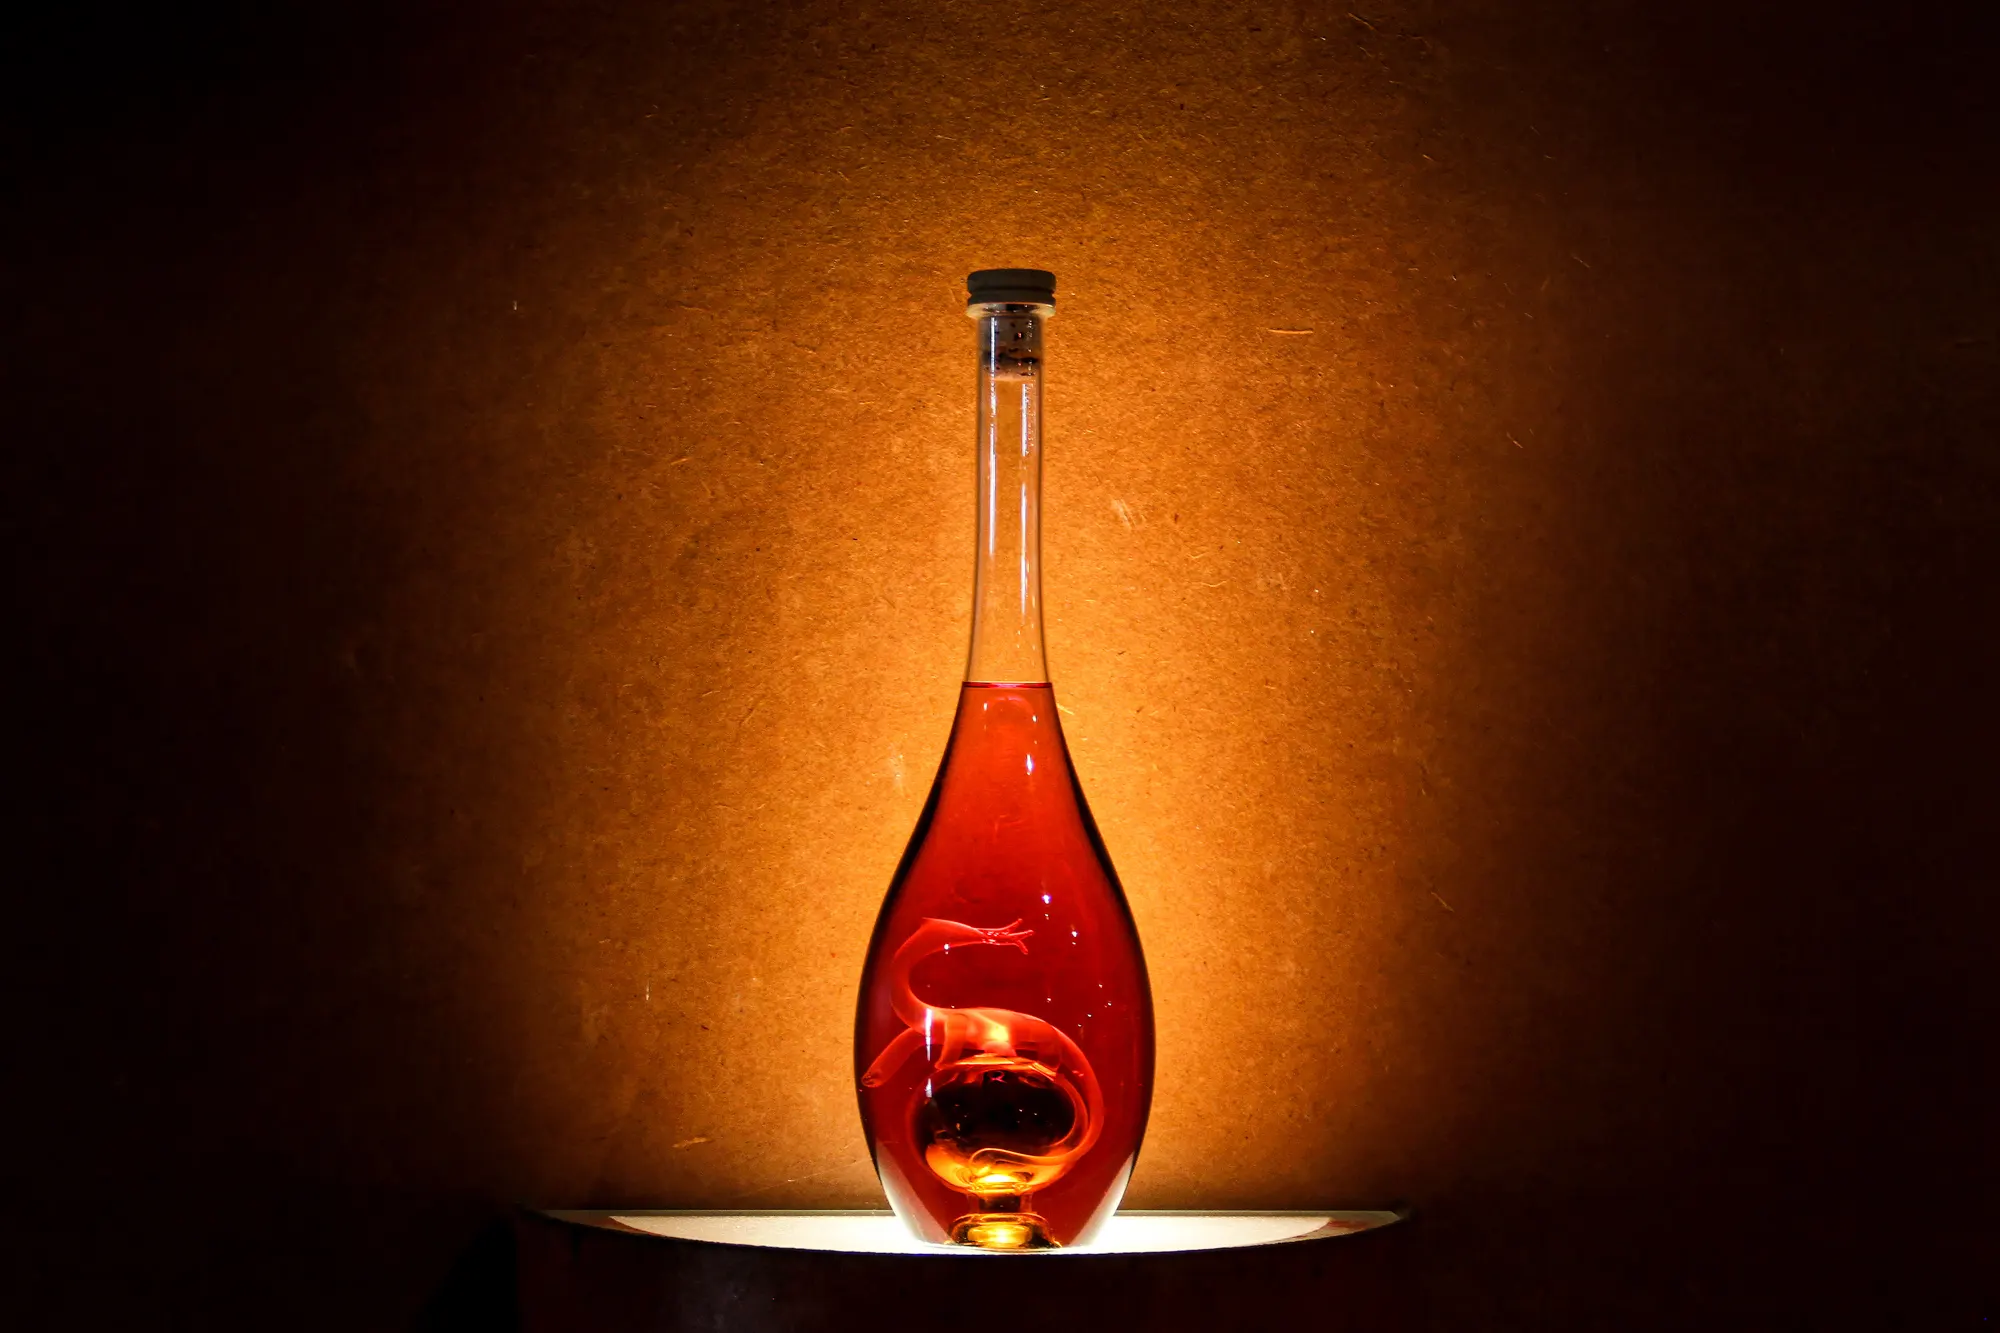 Bouteille de Cognac à boire avec modération Photo réalisée par iannpict photographe d'objet